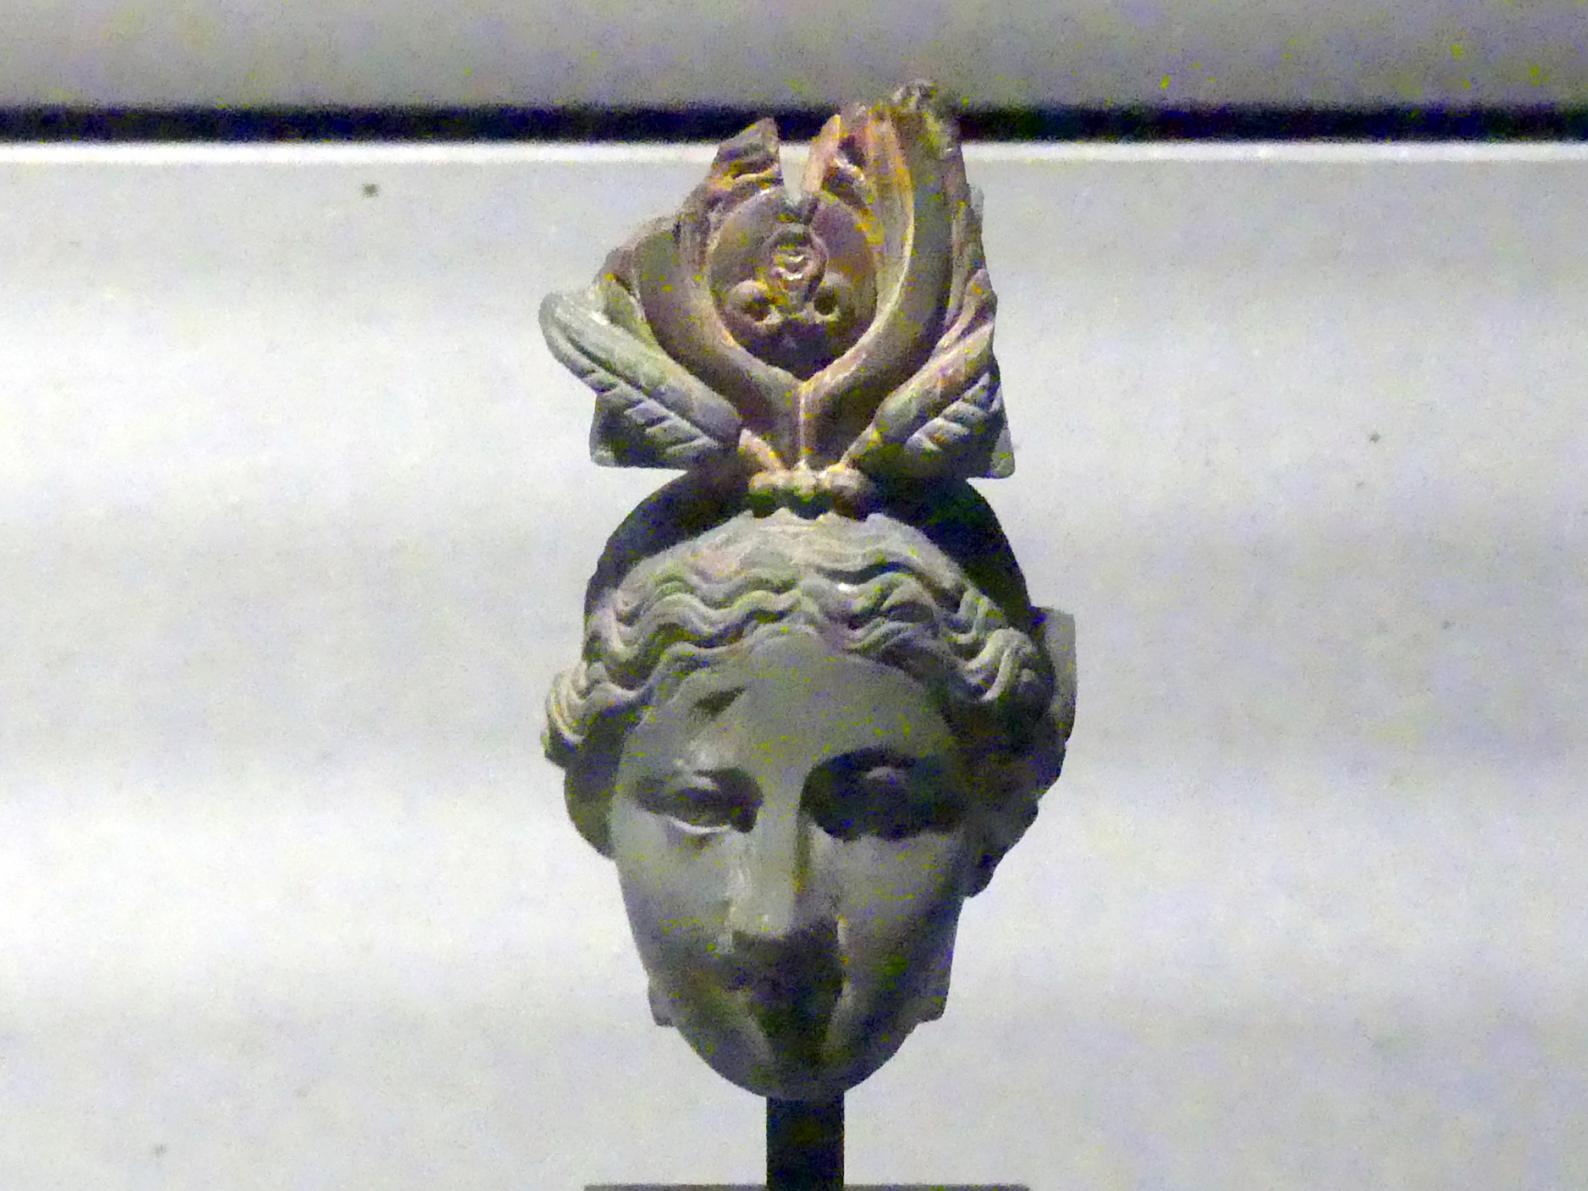 Kopf einer Statue der Göttin Isis, Römische Kaiserzeit, 27 v. Chr. - 54 n. Chr., 200